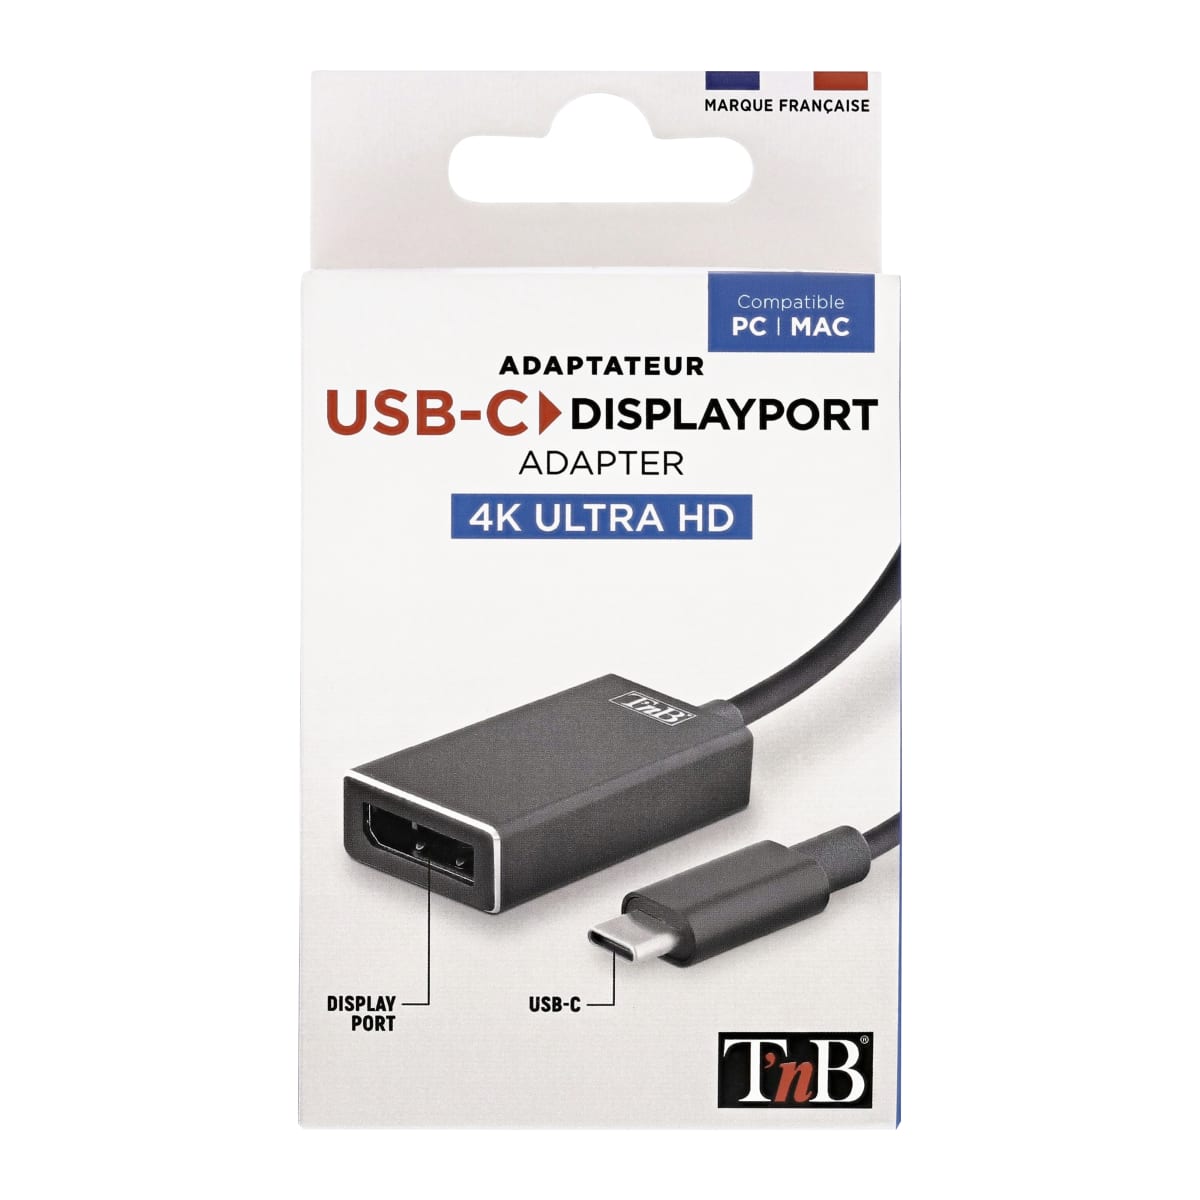 T'nb Adaptateur USB C vers USB 30 femelle - prix pas cher chez